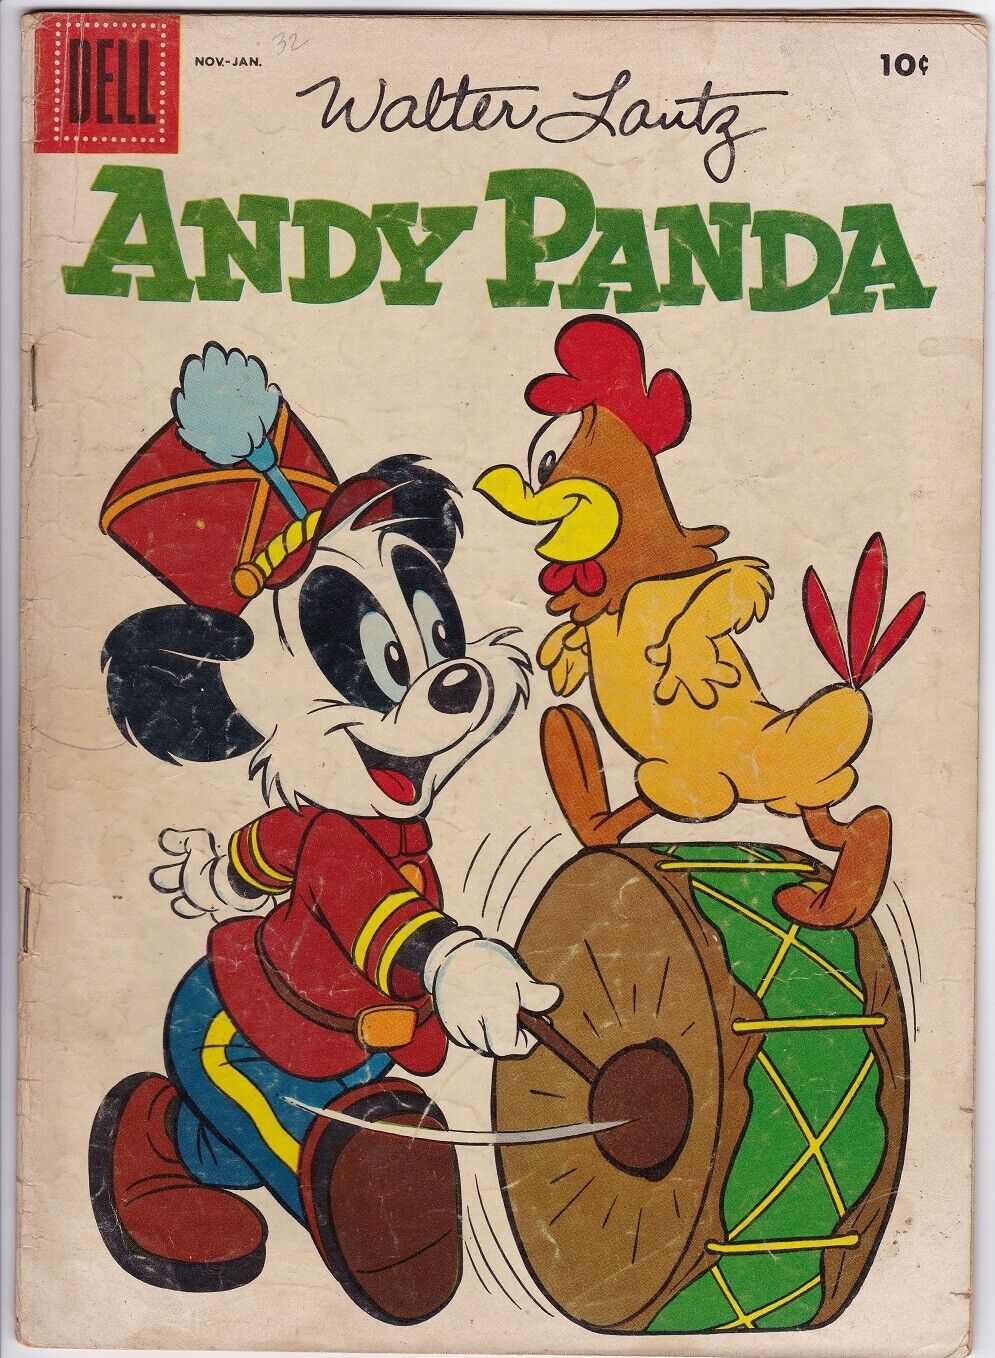 ANDY PANDA # 34 (DELL) (1956) WALTER LANTZ - CHARLIE CHICKEN - PHIL de LARA art